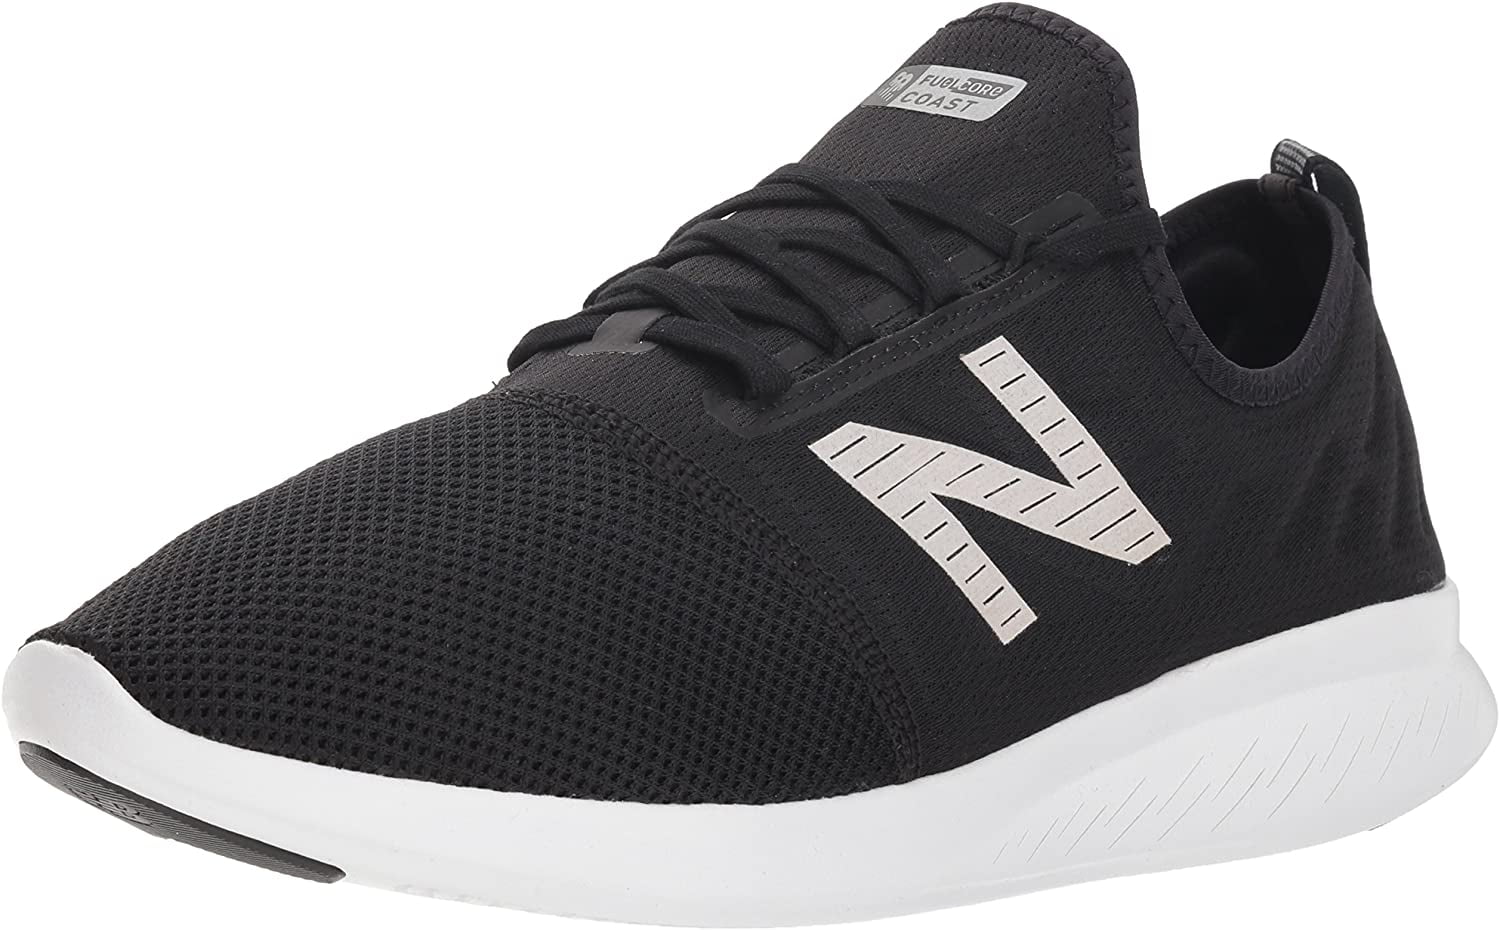 V4 FuelCore Running Shoe, Black/White 